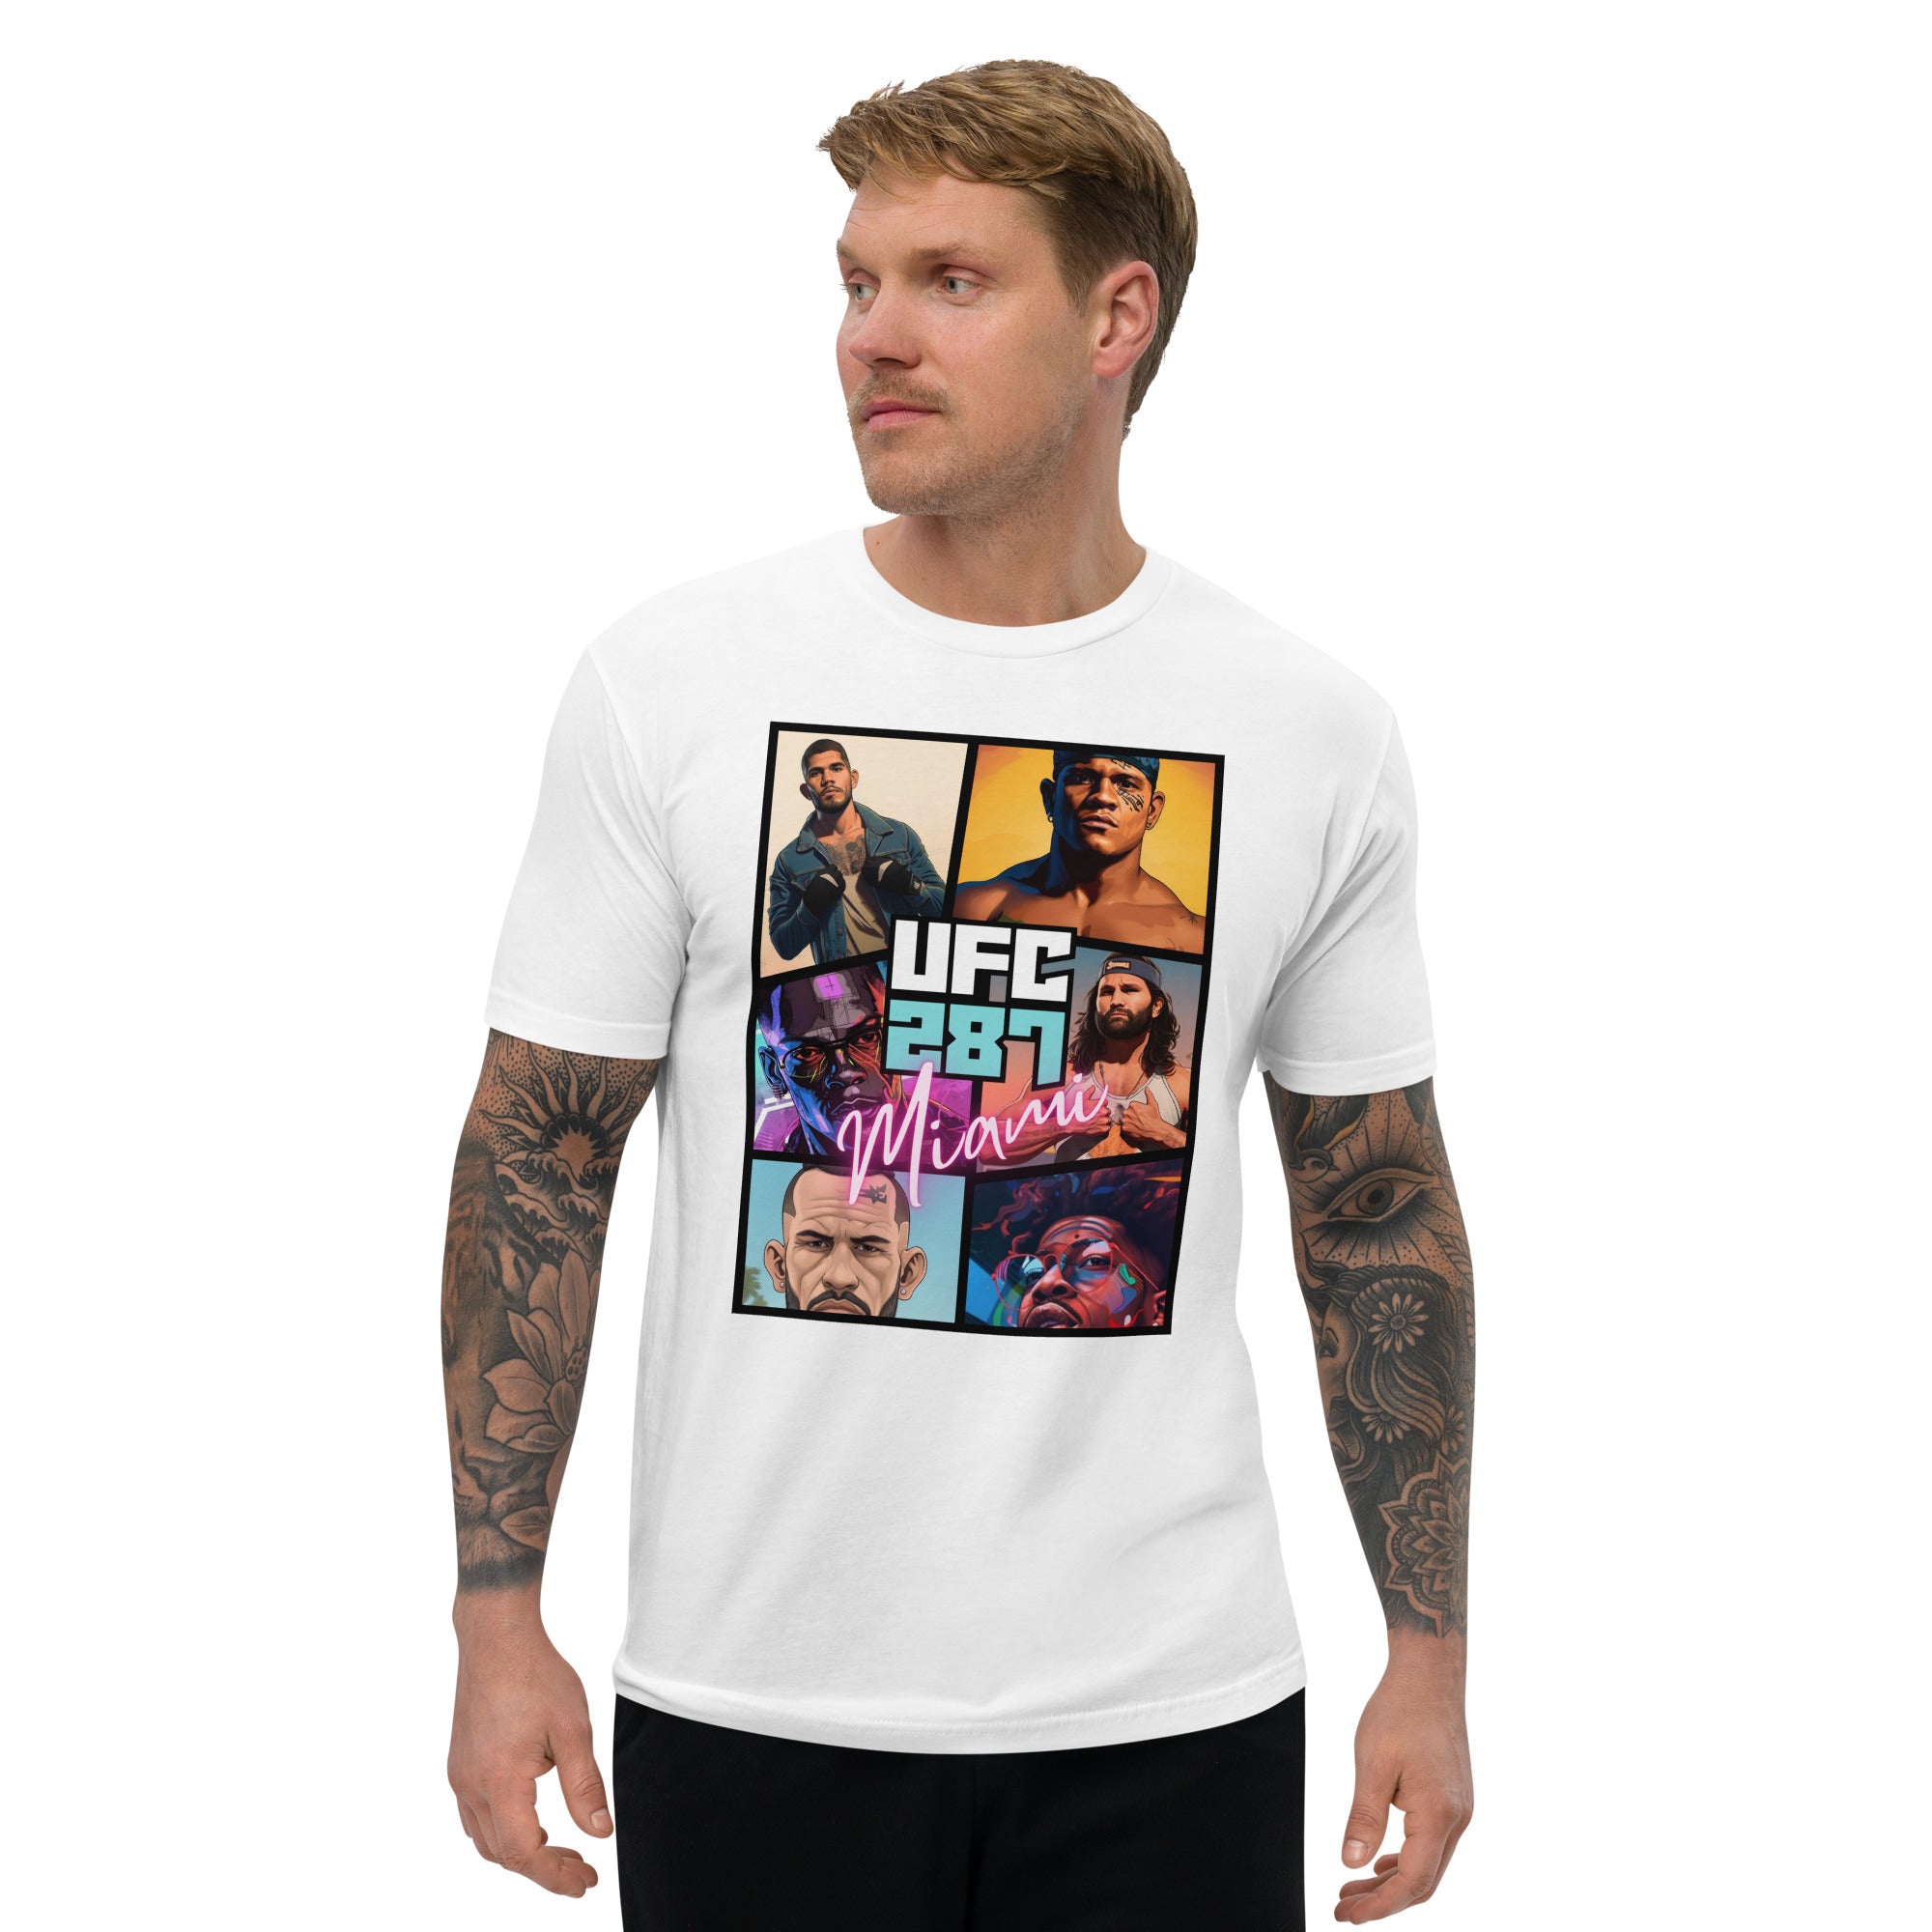 UFC 287 Miami Premium T-Shirt